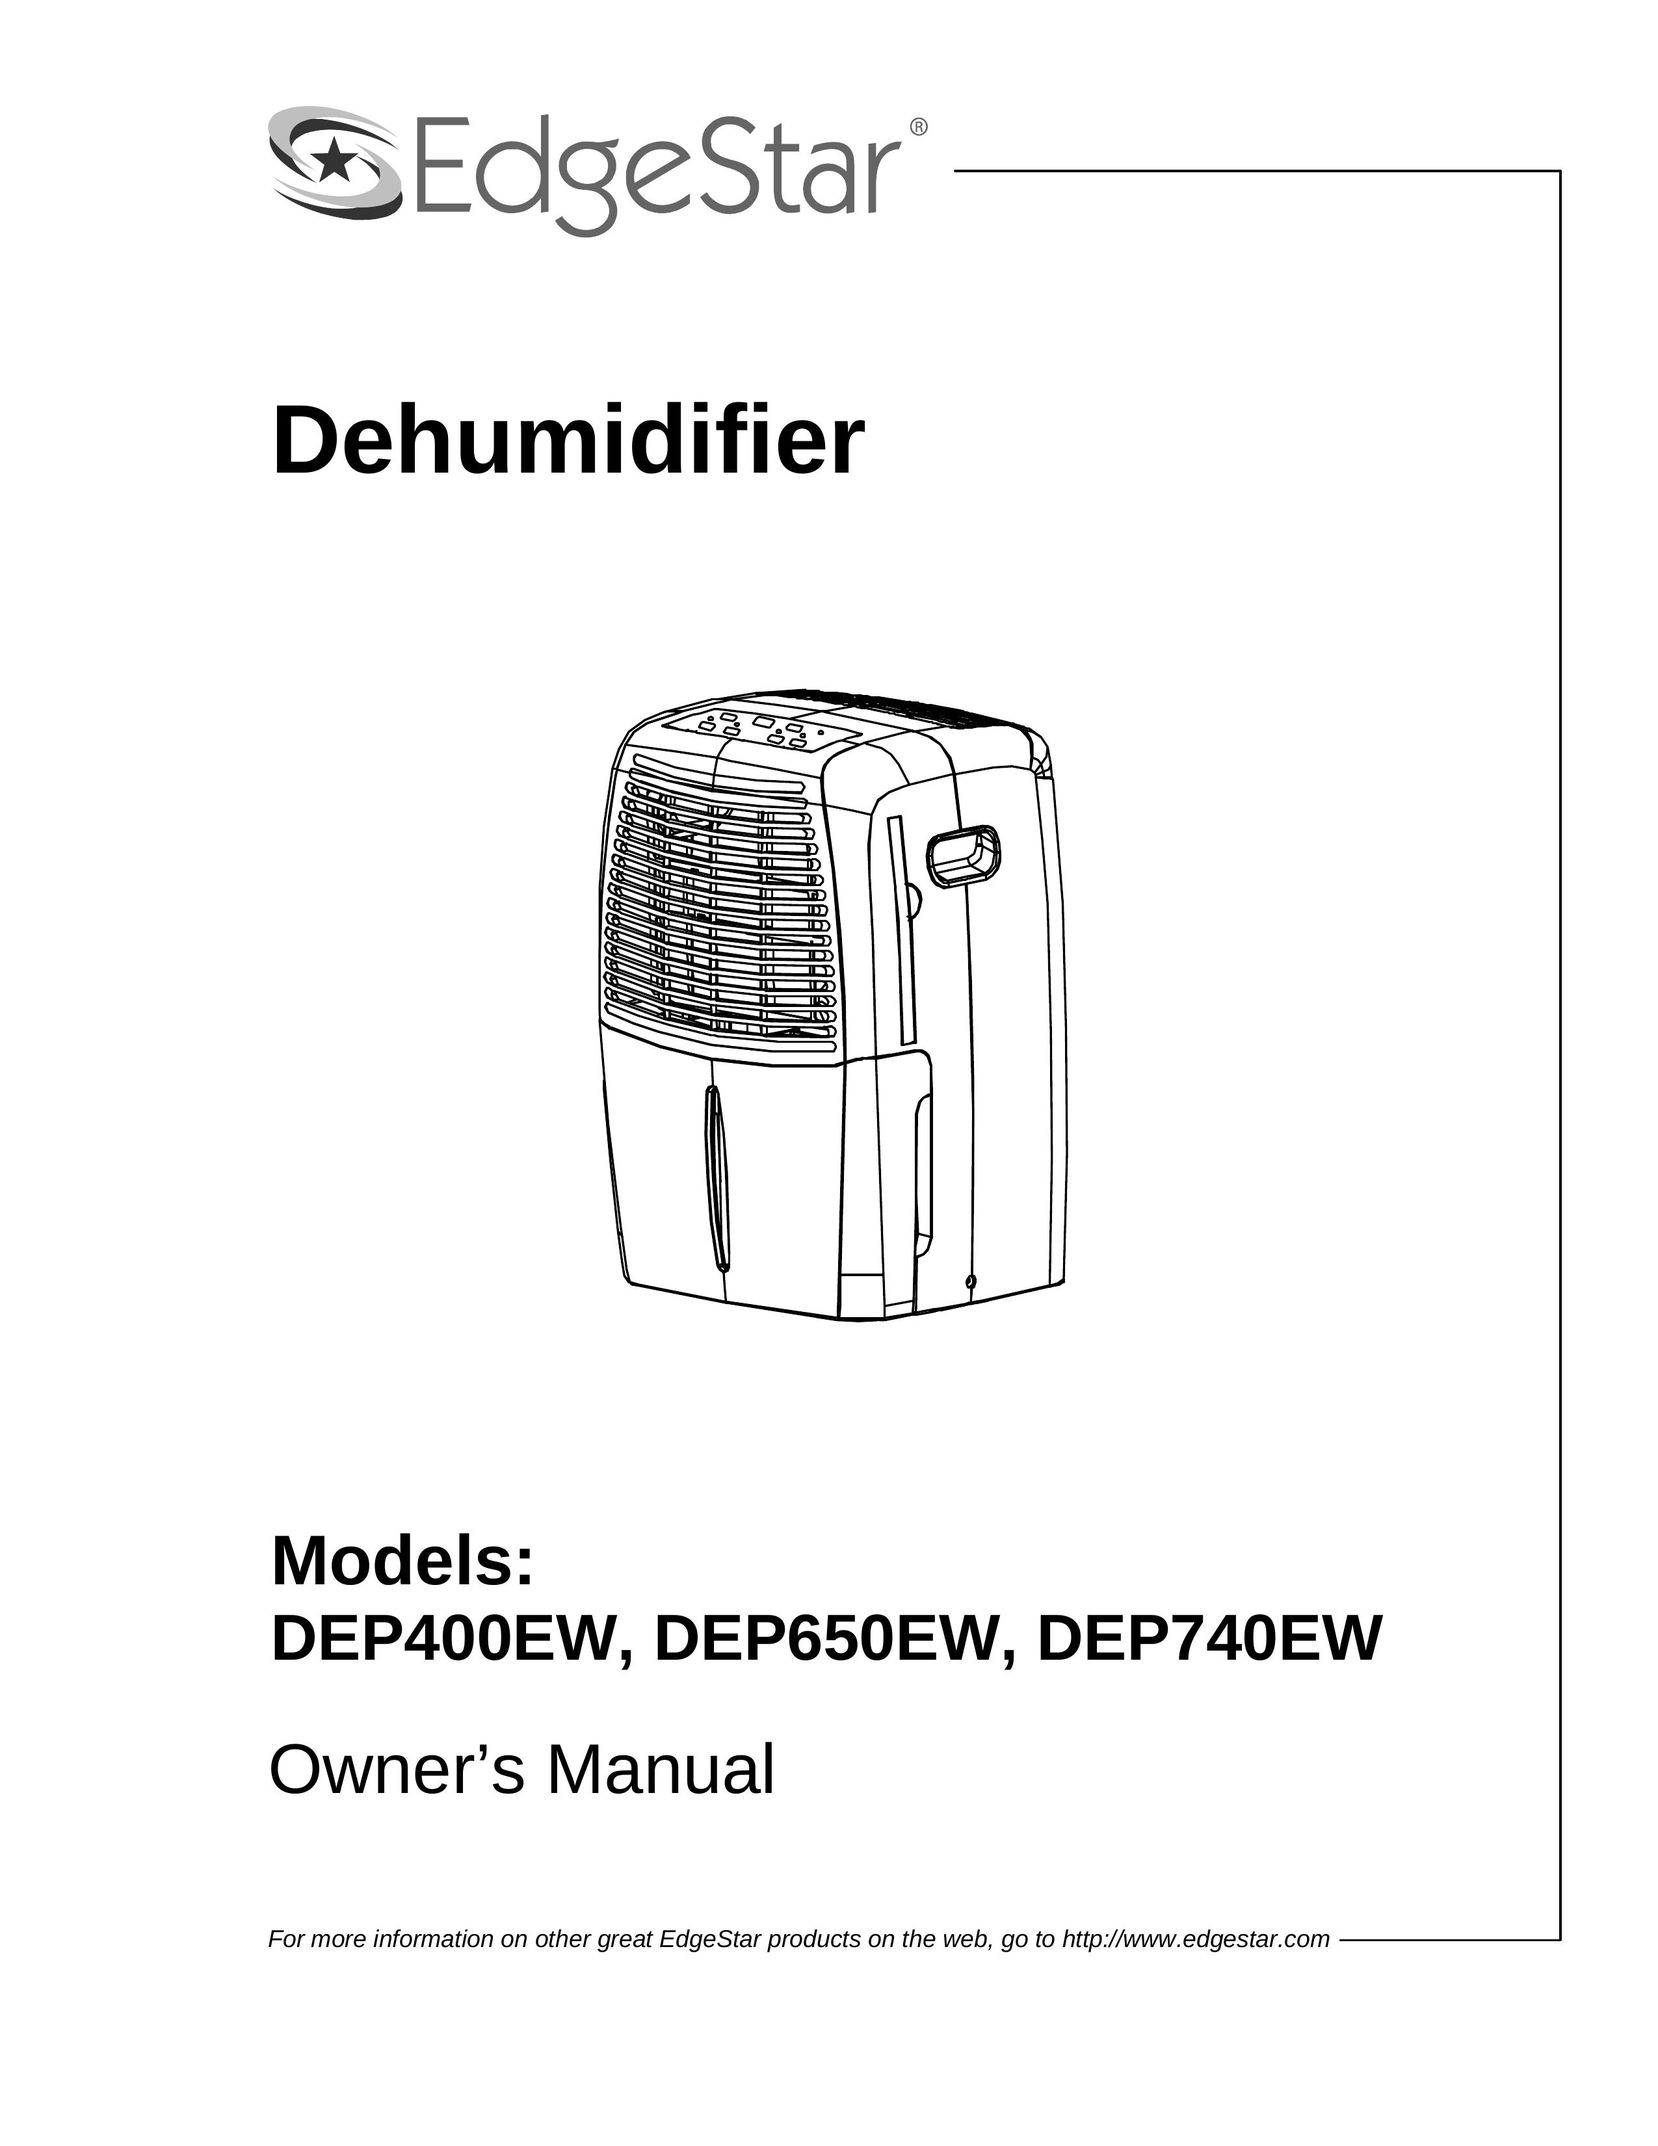 EdgeStar DEP650EW Dehumidifier User Manual